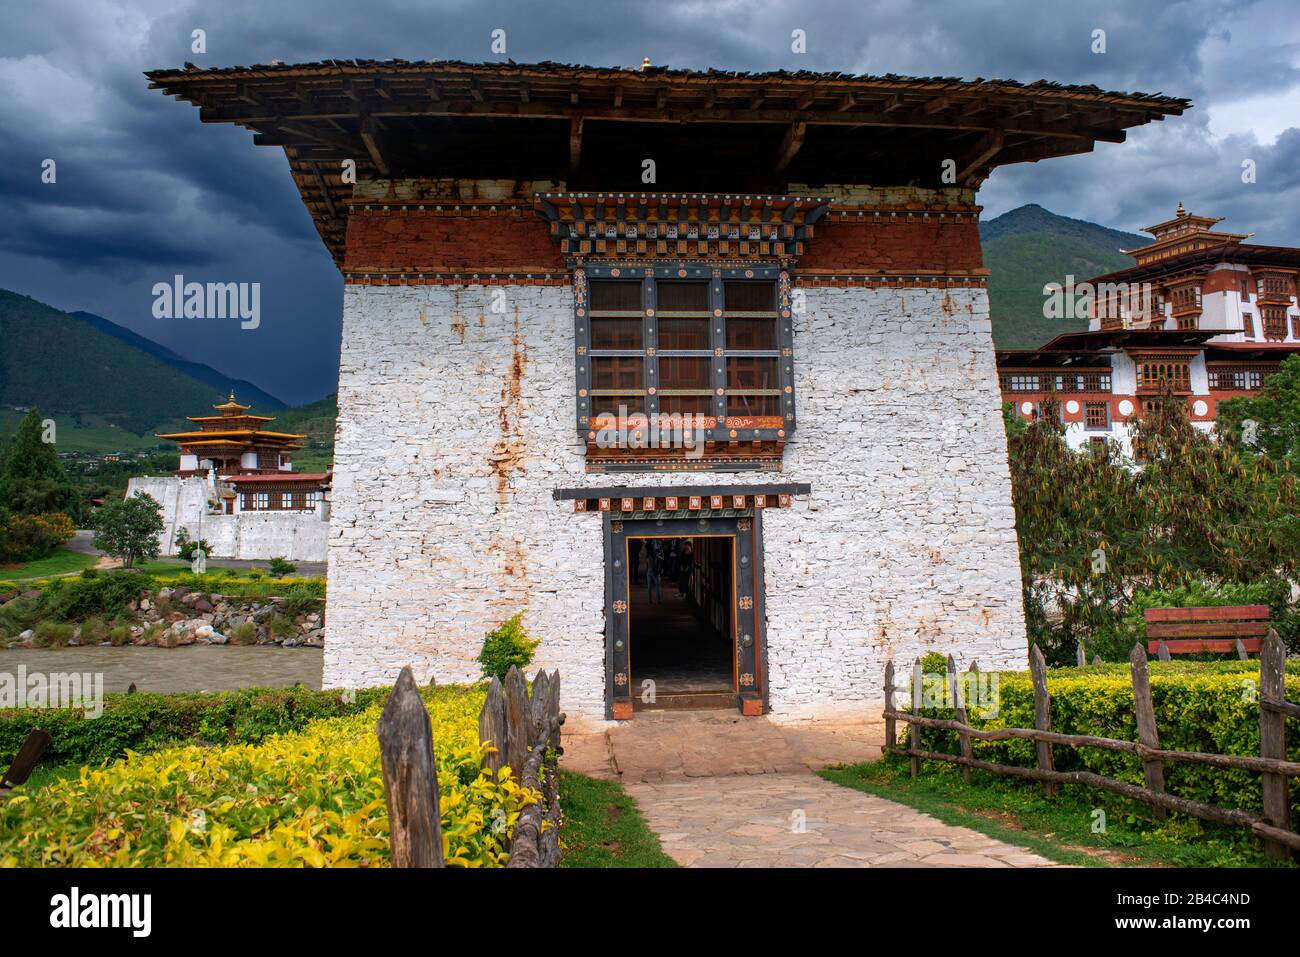 Das Kloster Punakha Dzong, das bhutanische Himalaya-Gebirge, Wurde ursprünglich in 1300 Jahren erbaut. Heilige Stätte für bhutanische Menschen an den Flüssen Phochu und Mochu, Blau-Gree Stockfoto